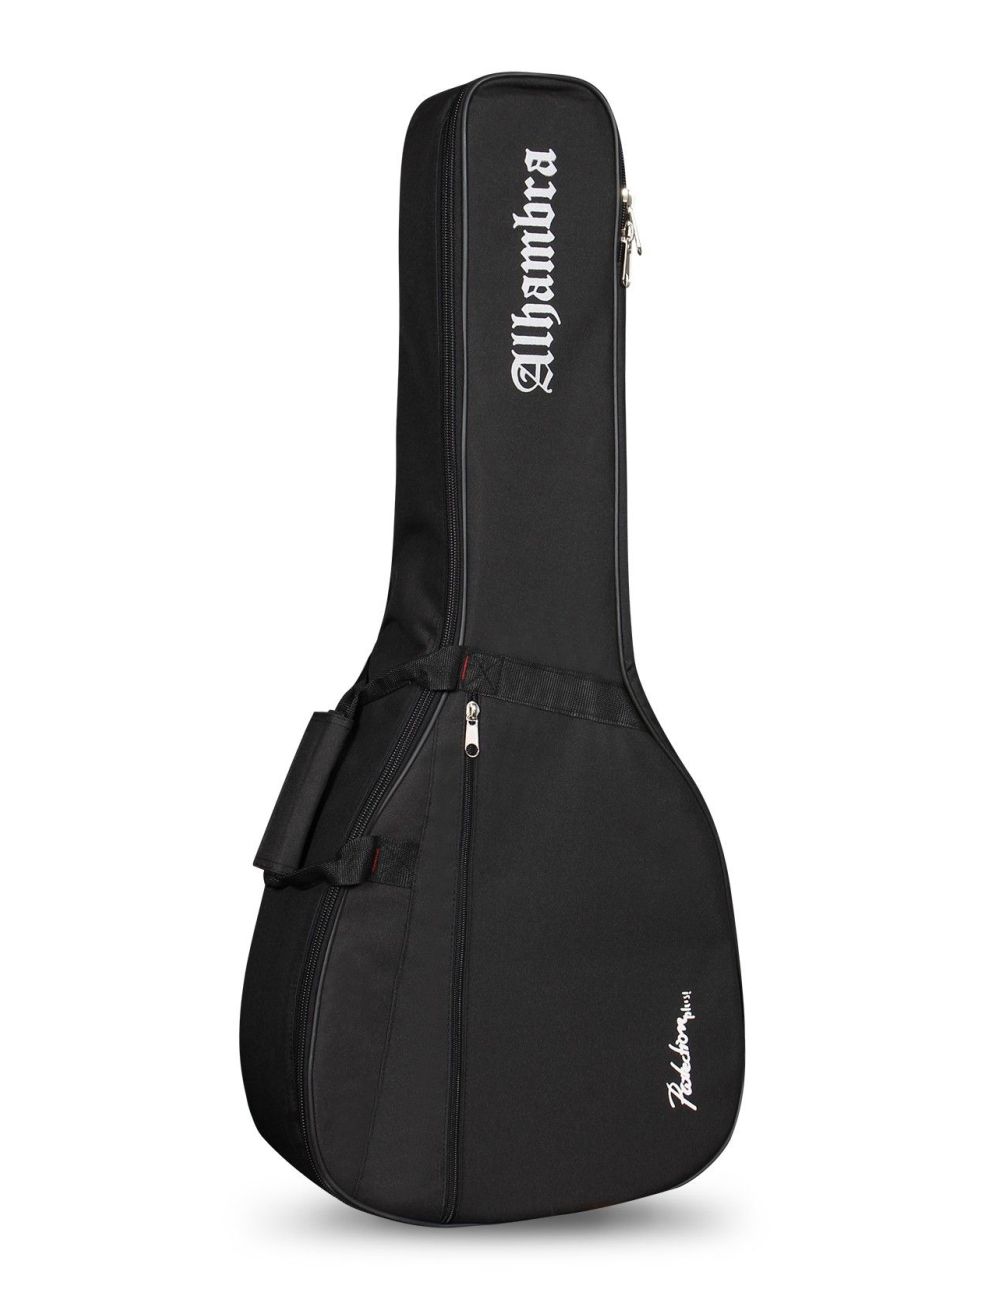 Ahambra 9534 Lute guitar bag 9534 Cases and Bags